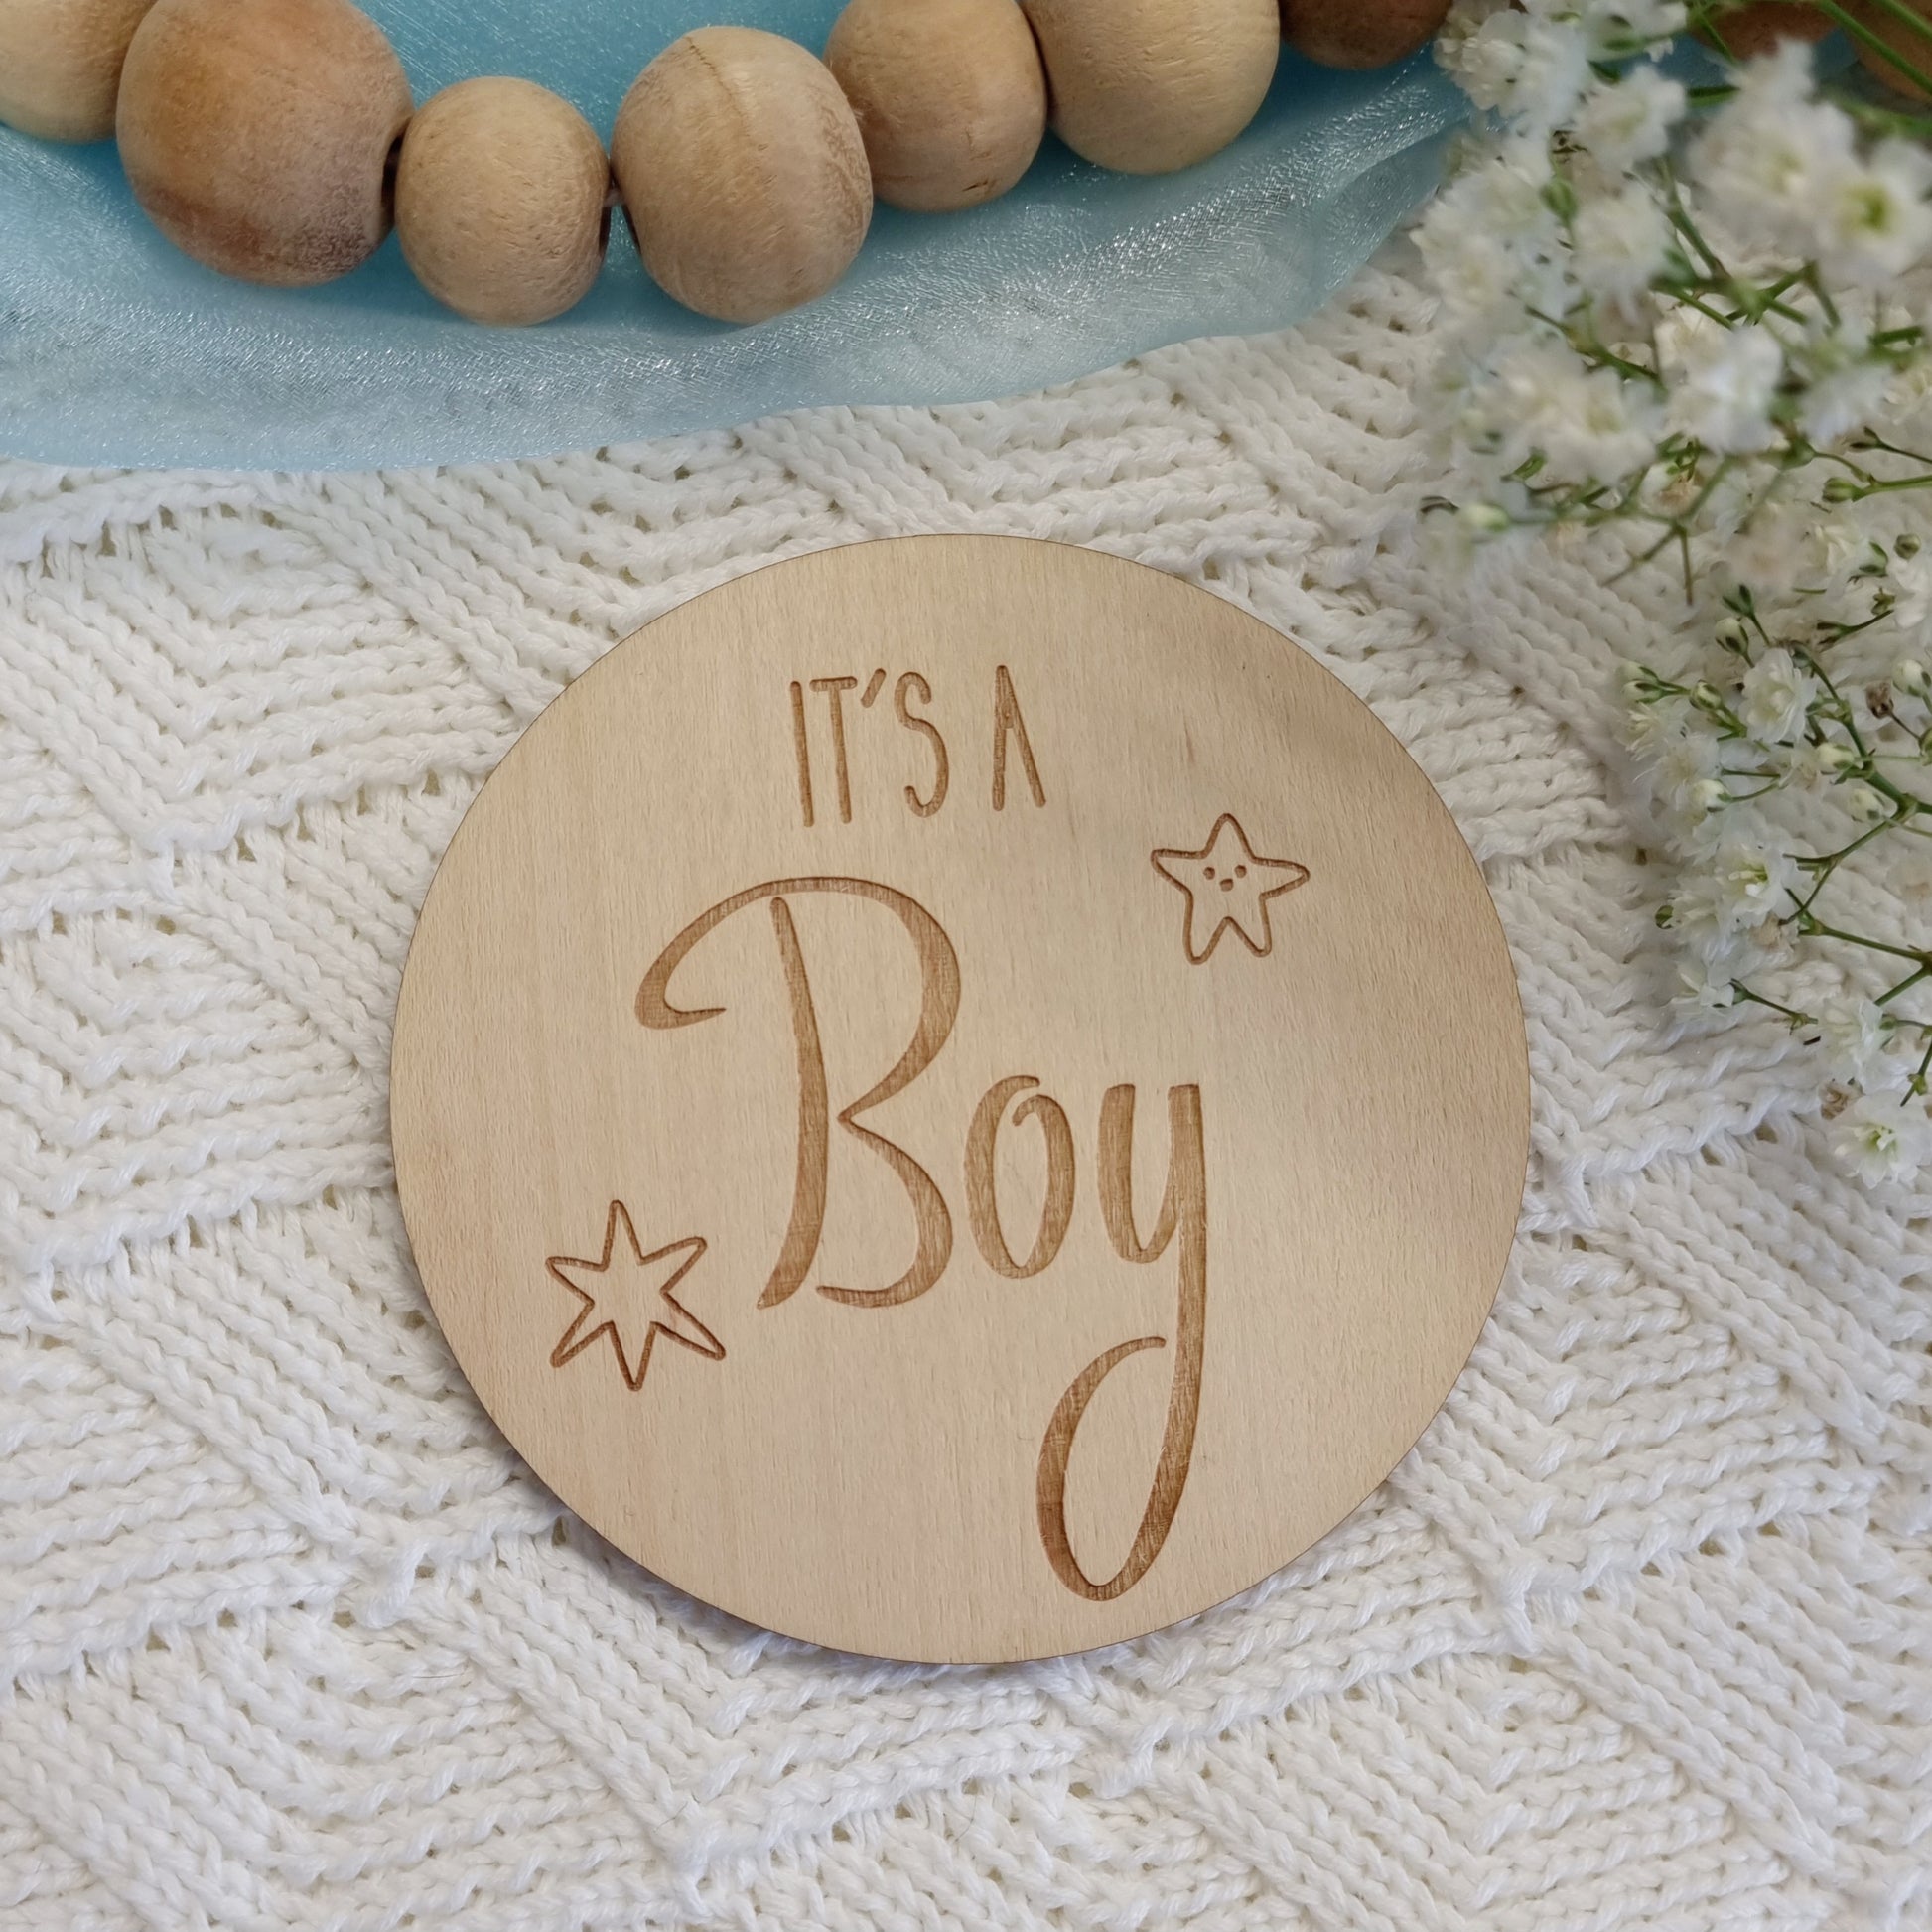 Gender reveal announcement. It's a boy